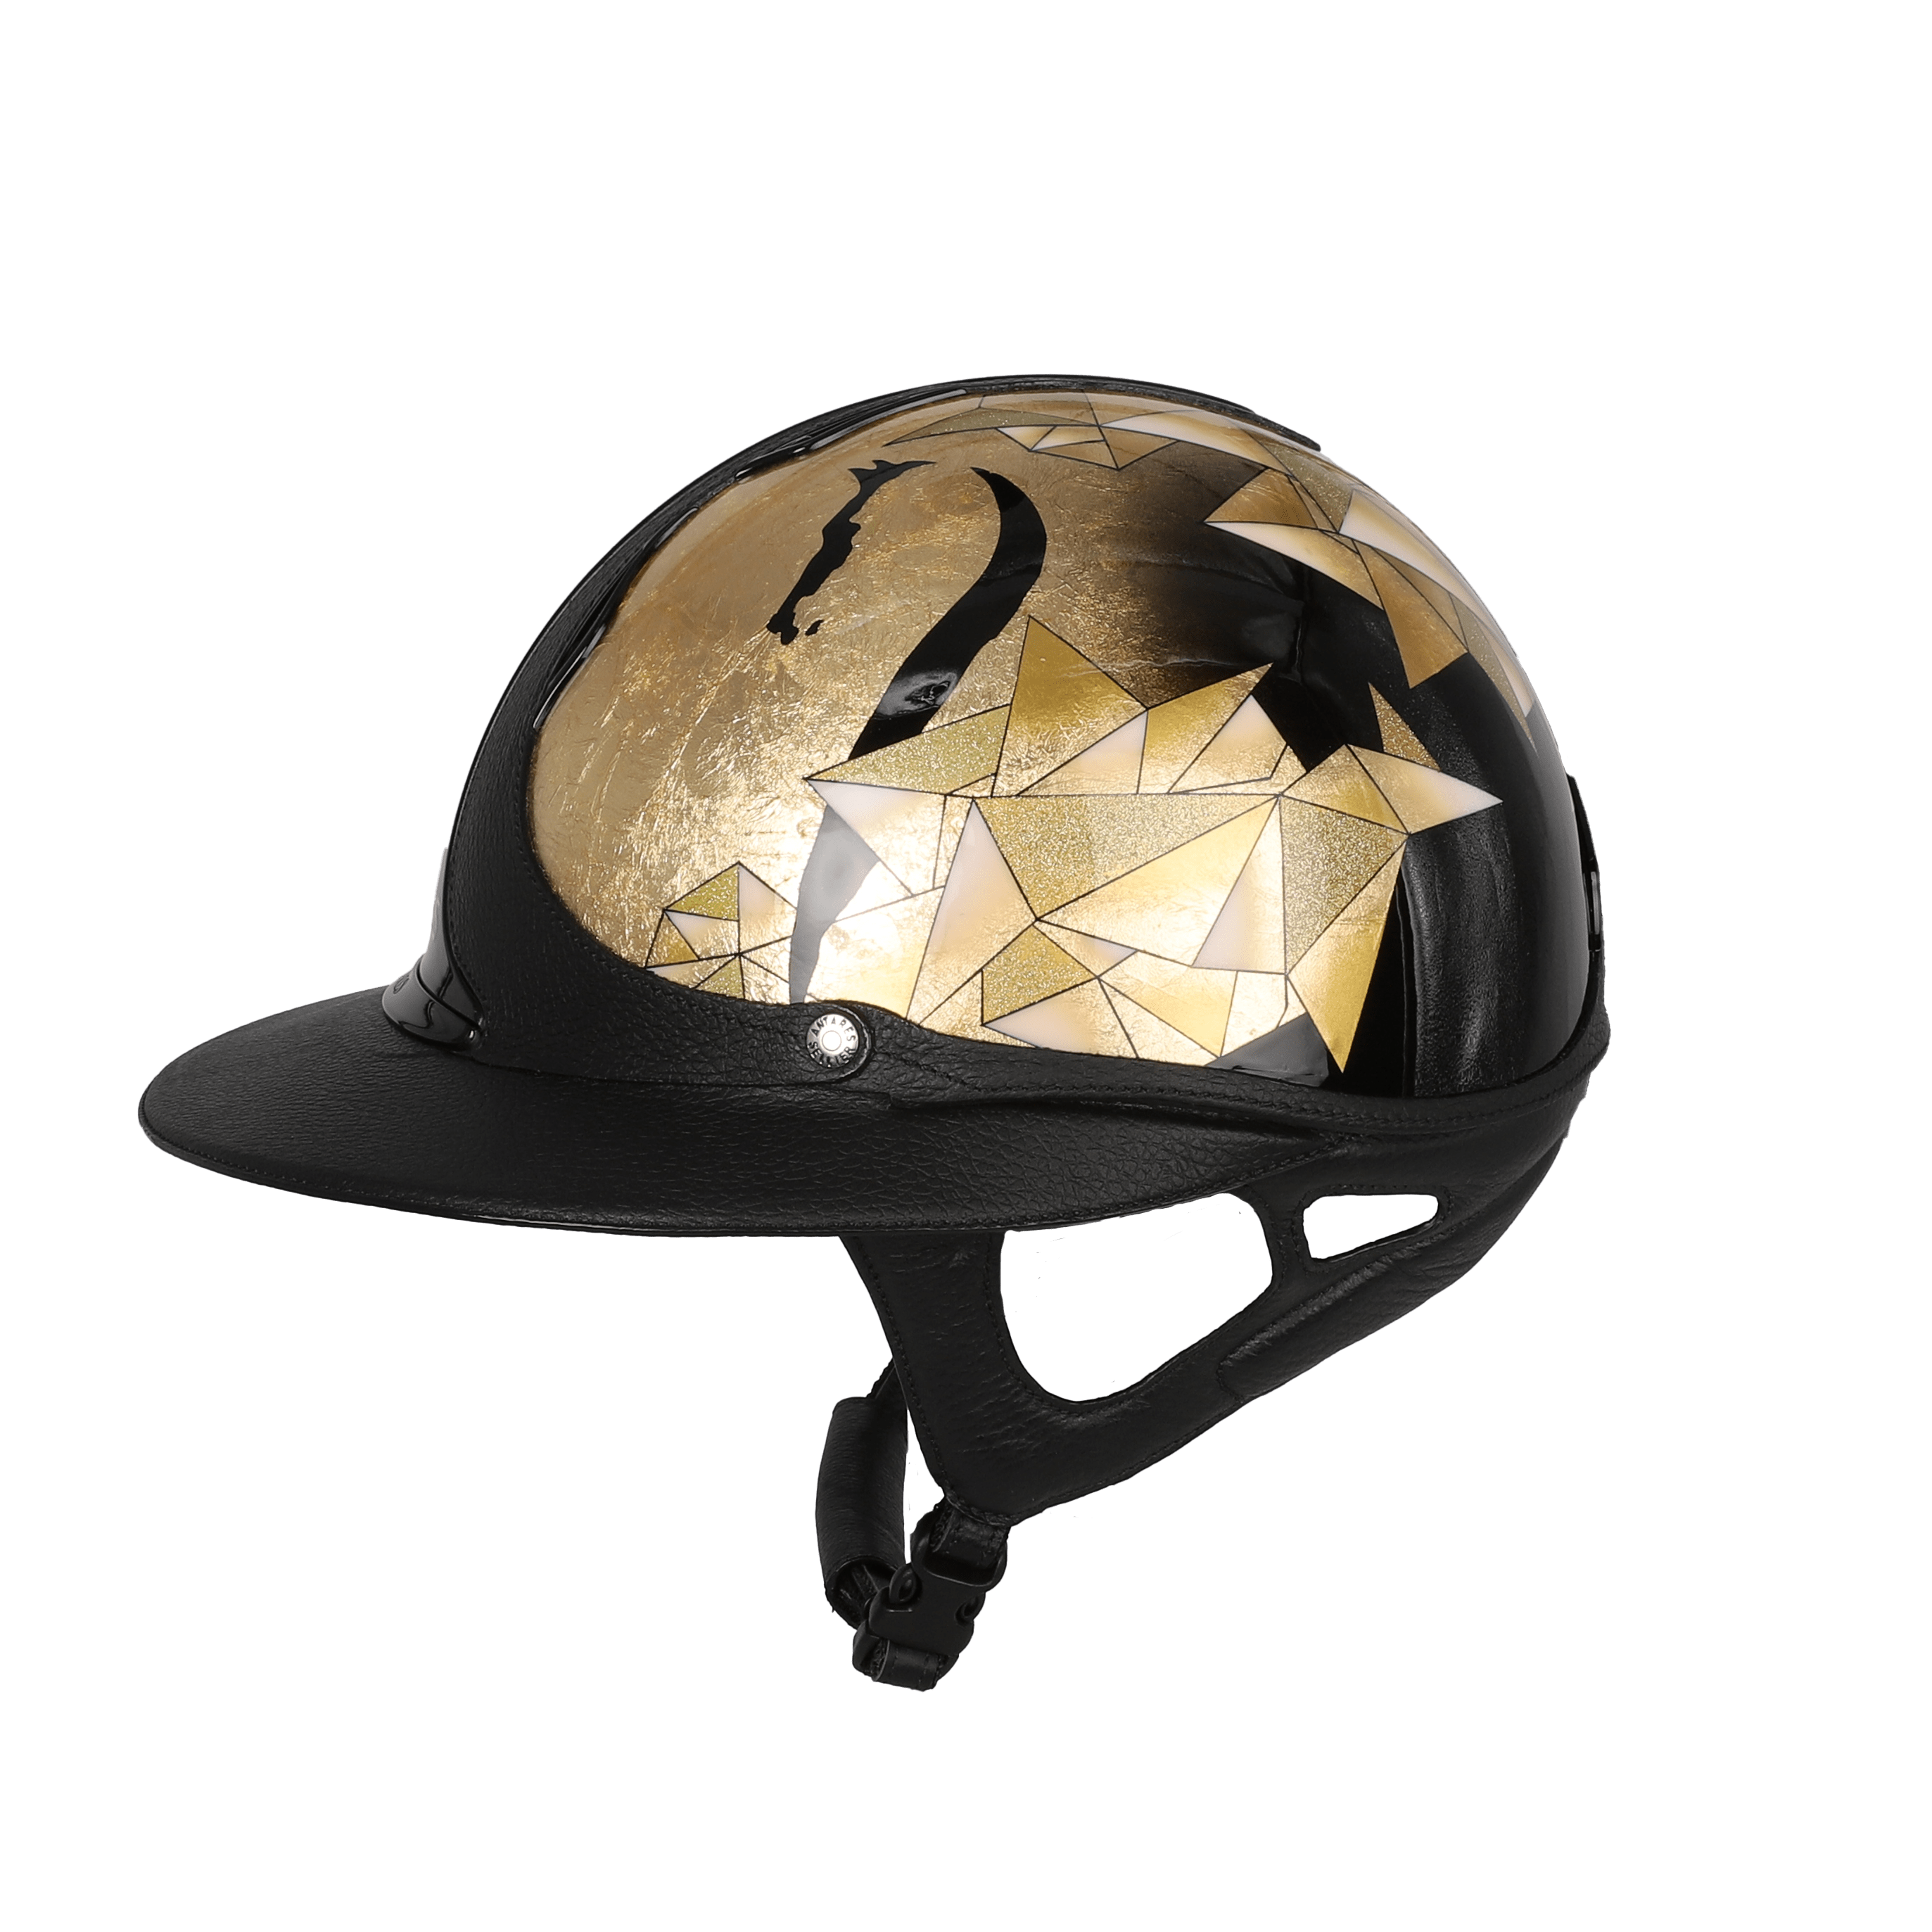 BS Designs casque personnalisé pour jockey profesionnel Antares